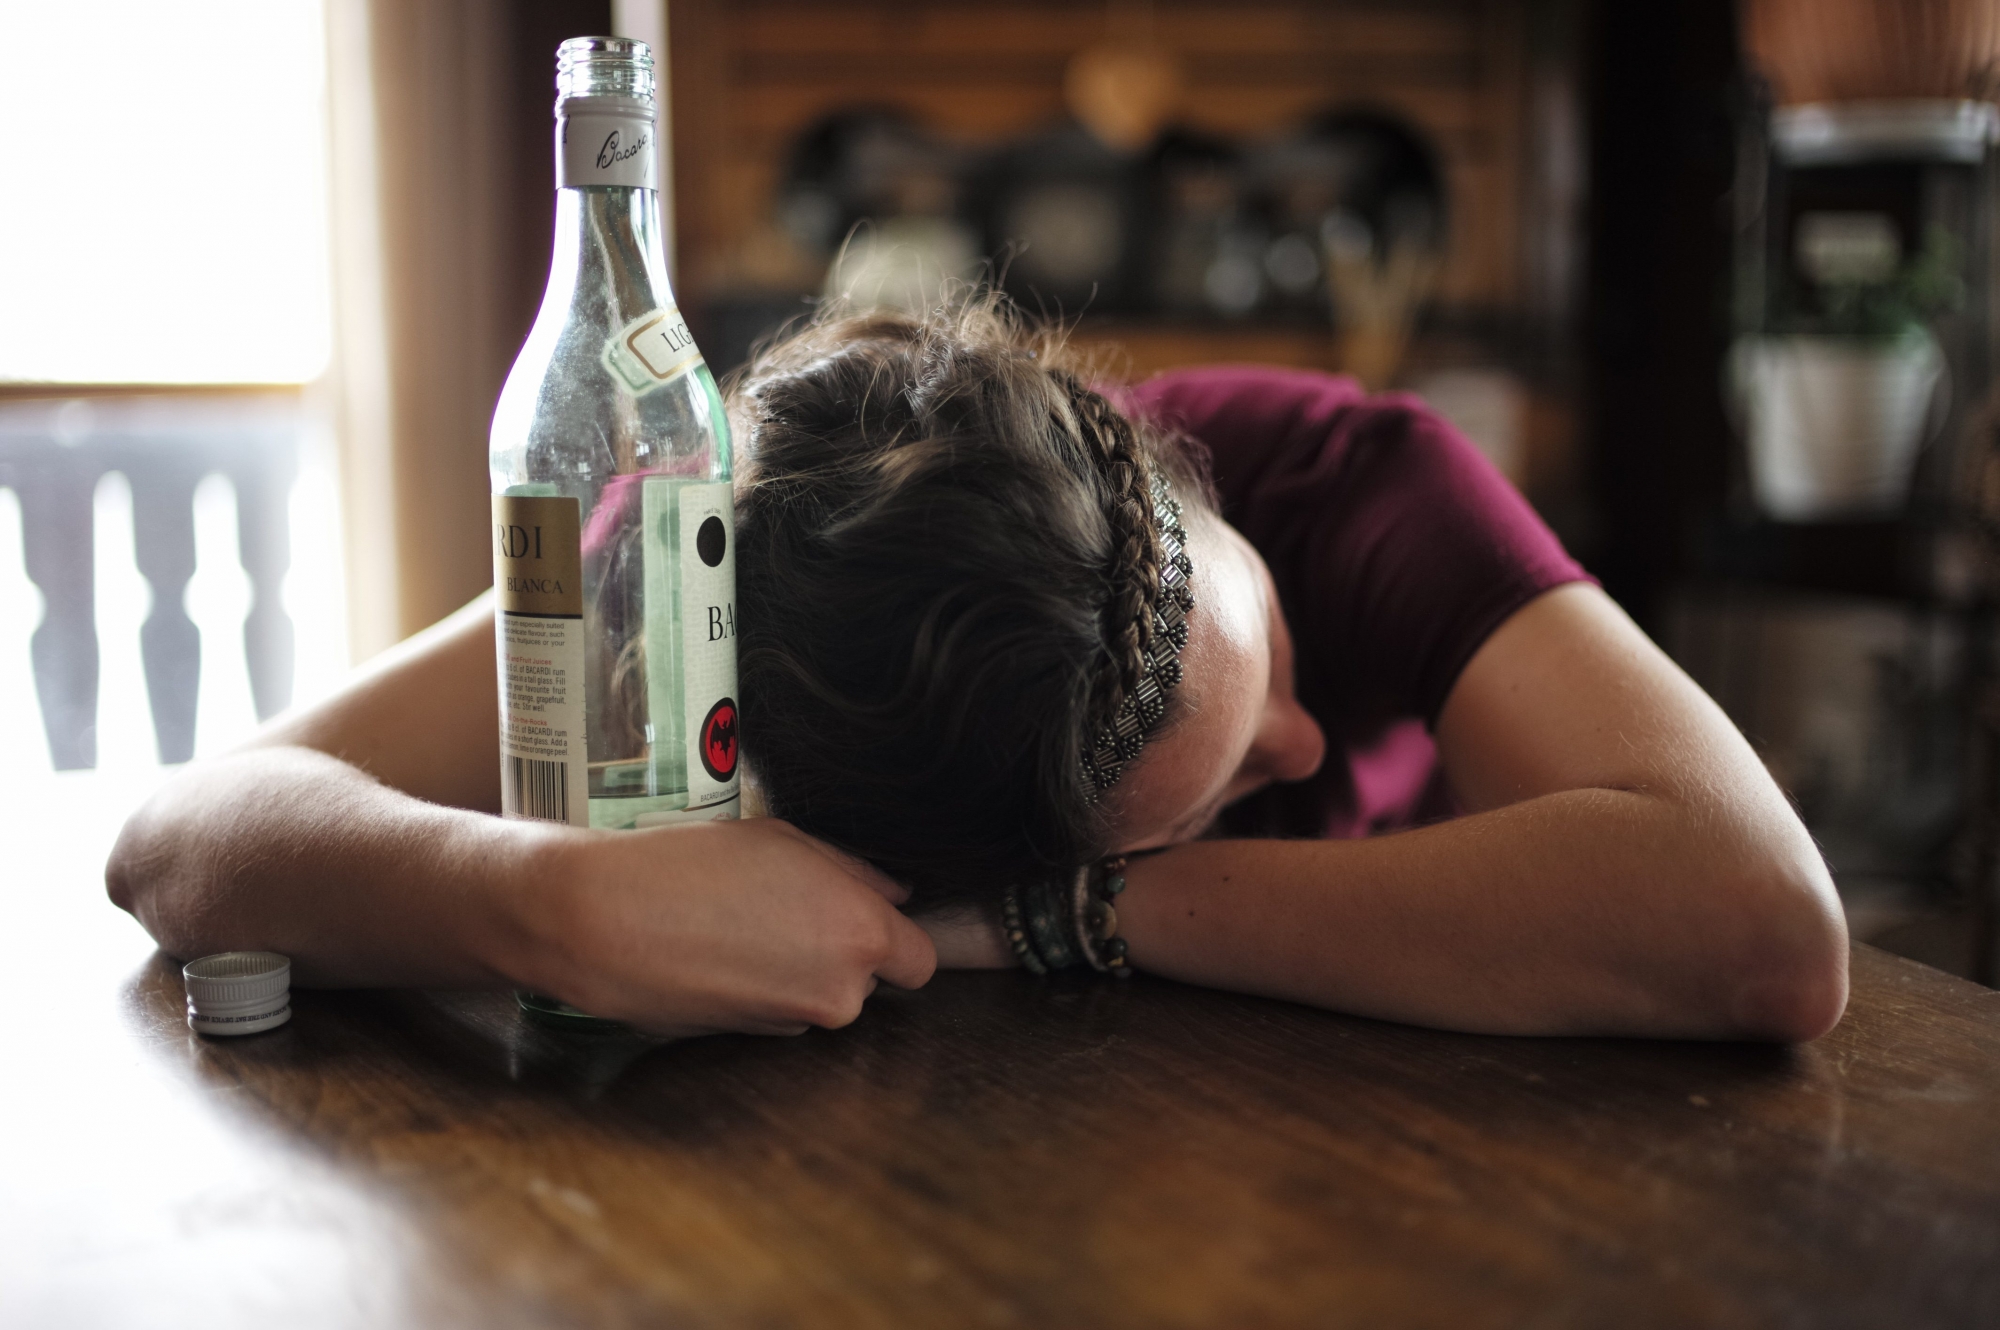 La consommation d'alcool peut aboutir à une grave dépendance.